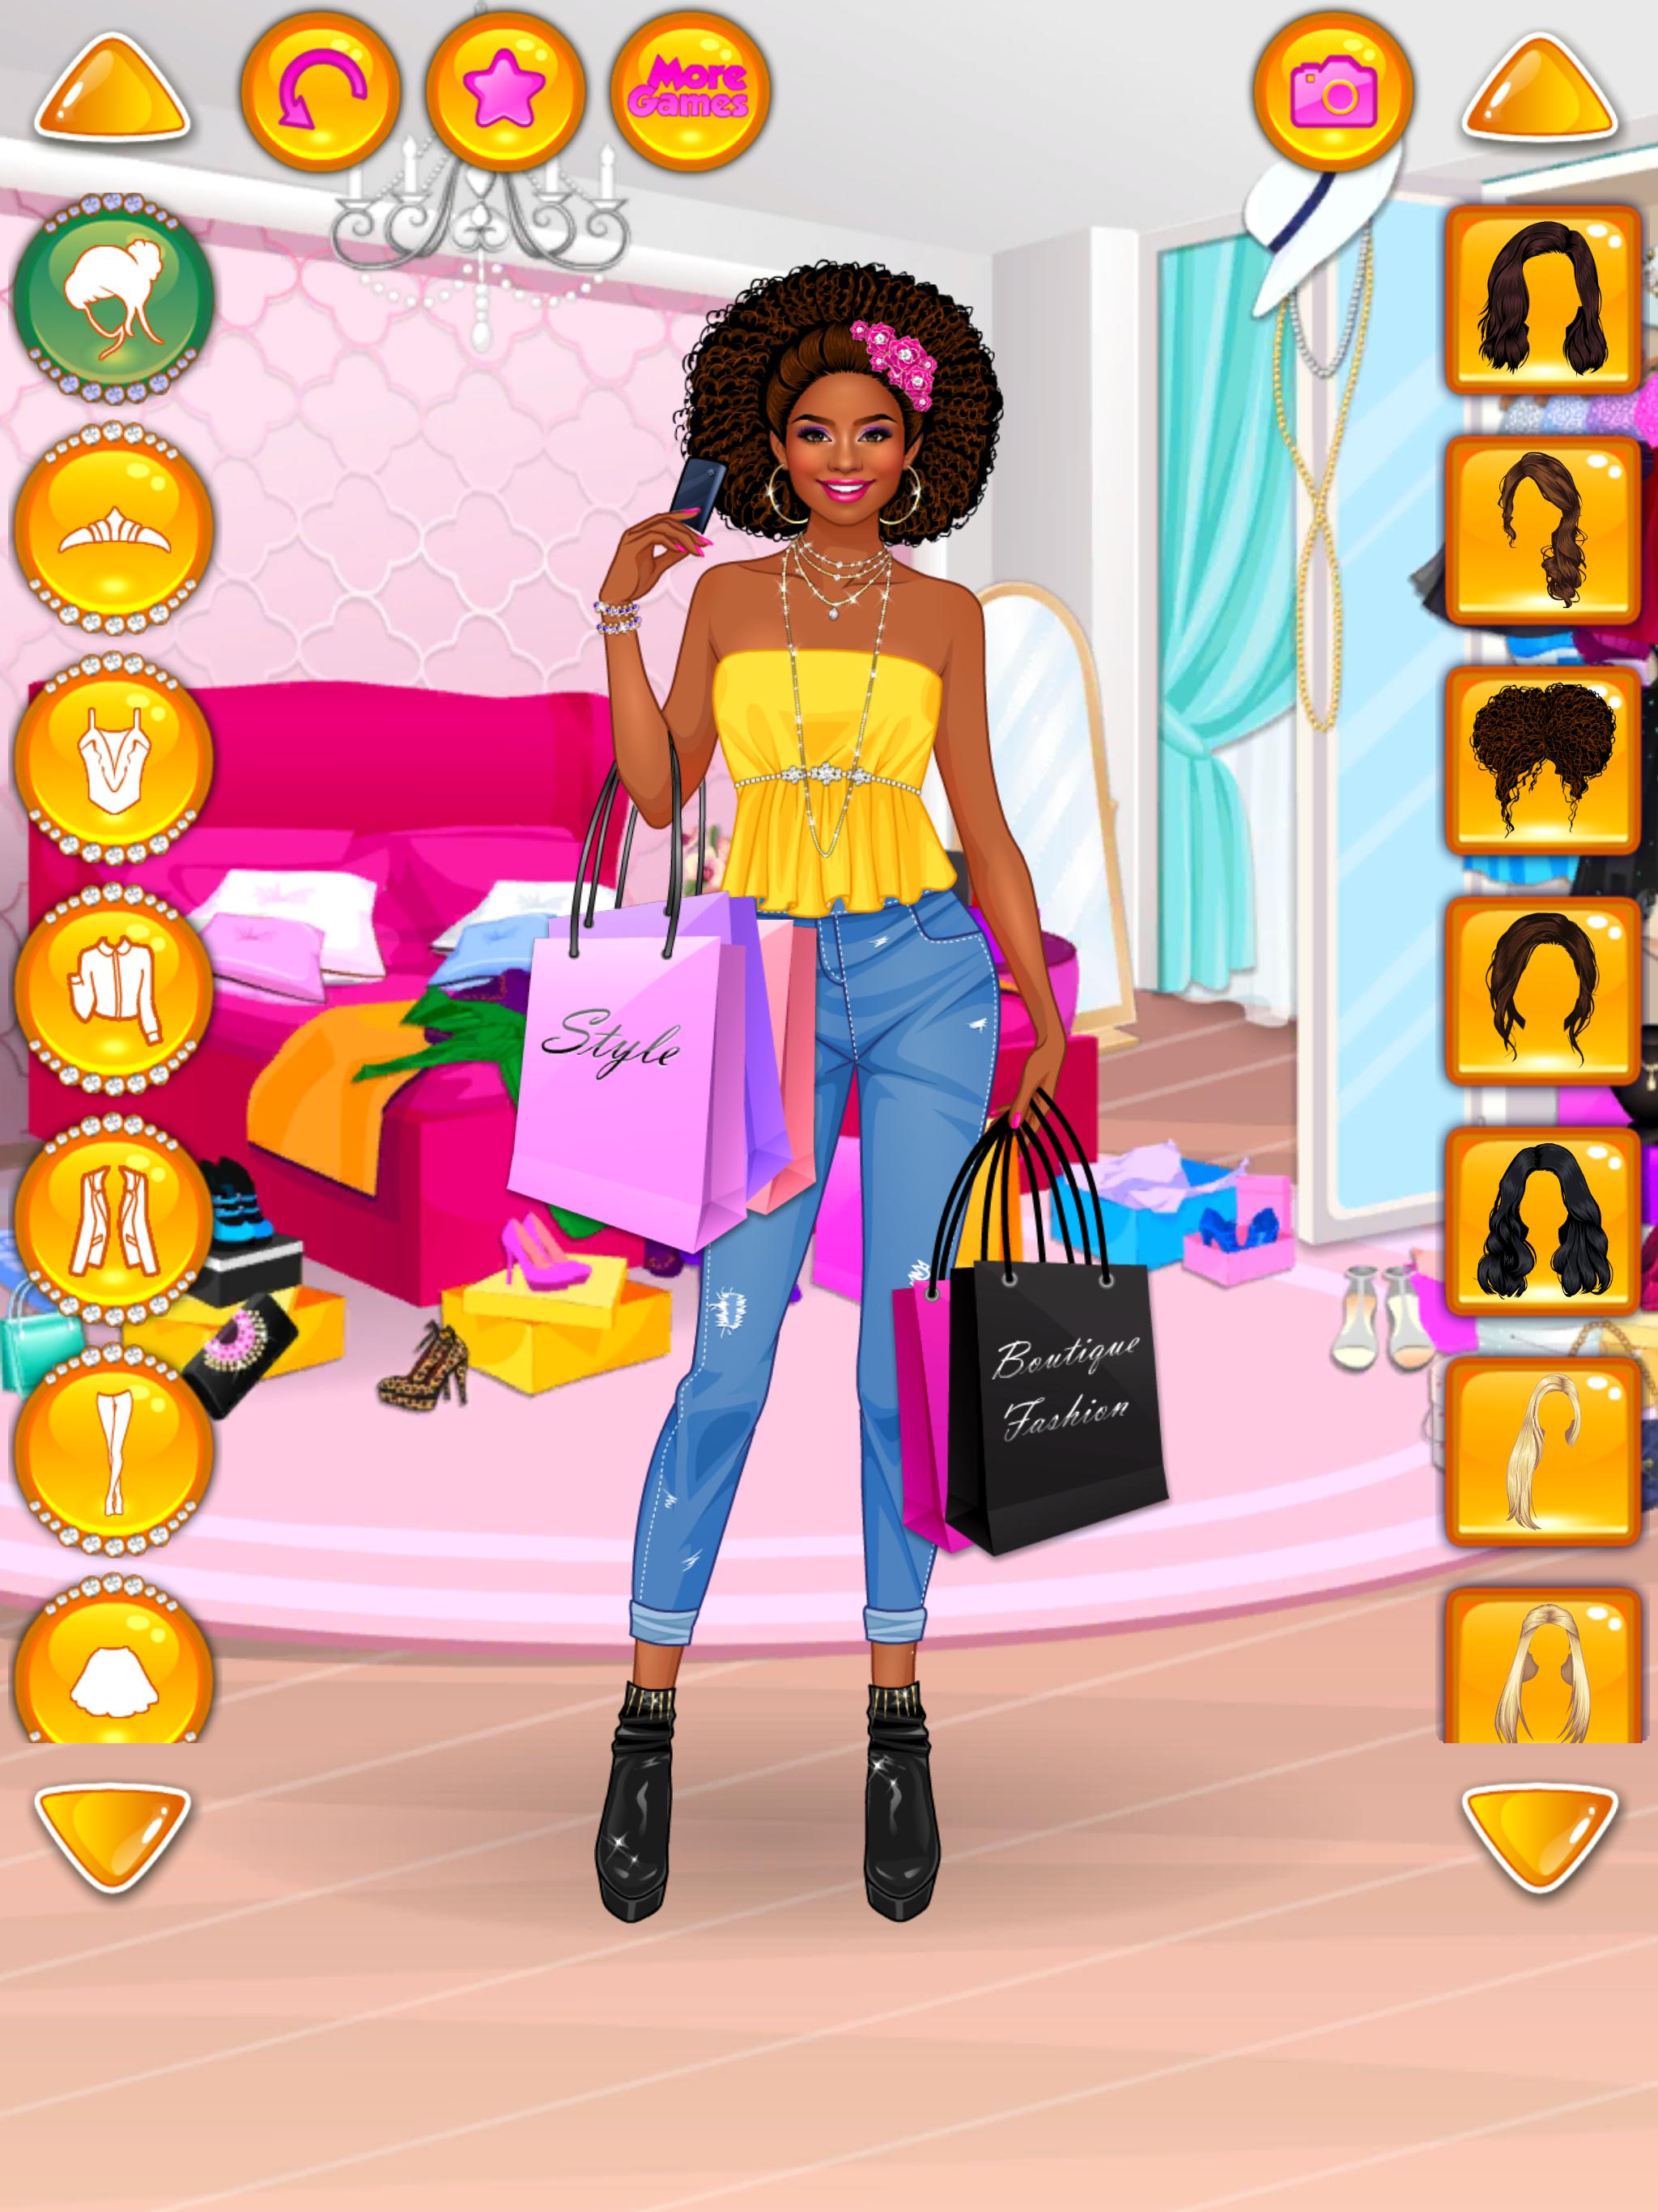 Rich Girl Crazy Shopping - Fashion Game 1.0.7 Screenshot 14